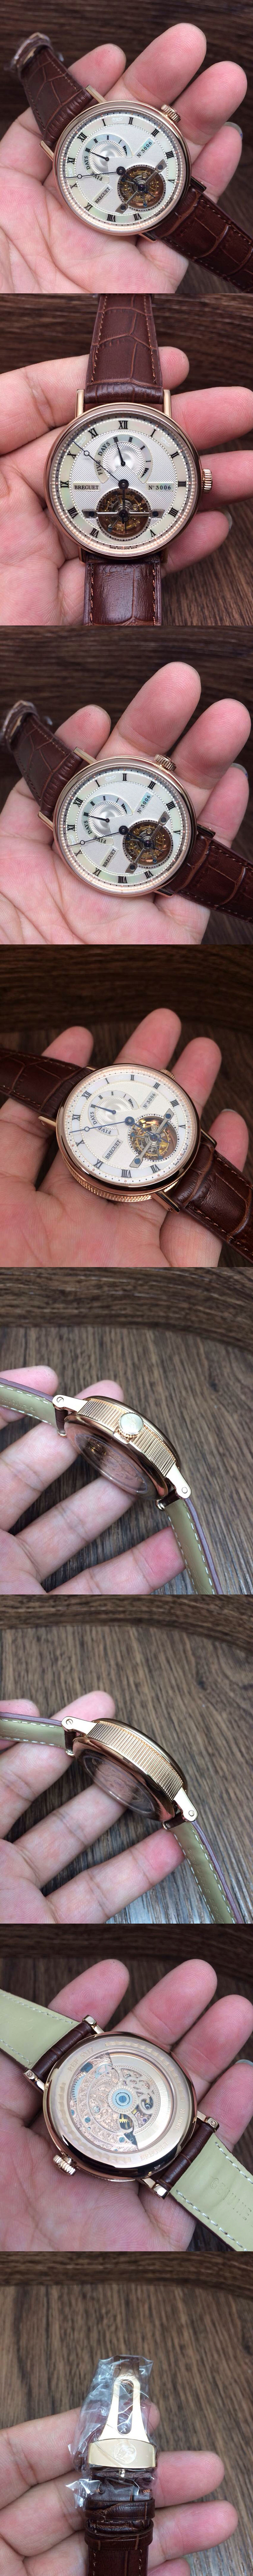 Replica Breguet Watches